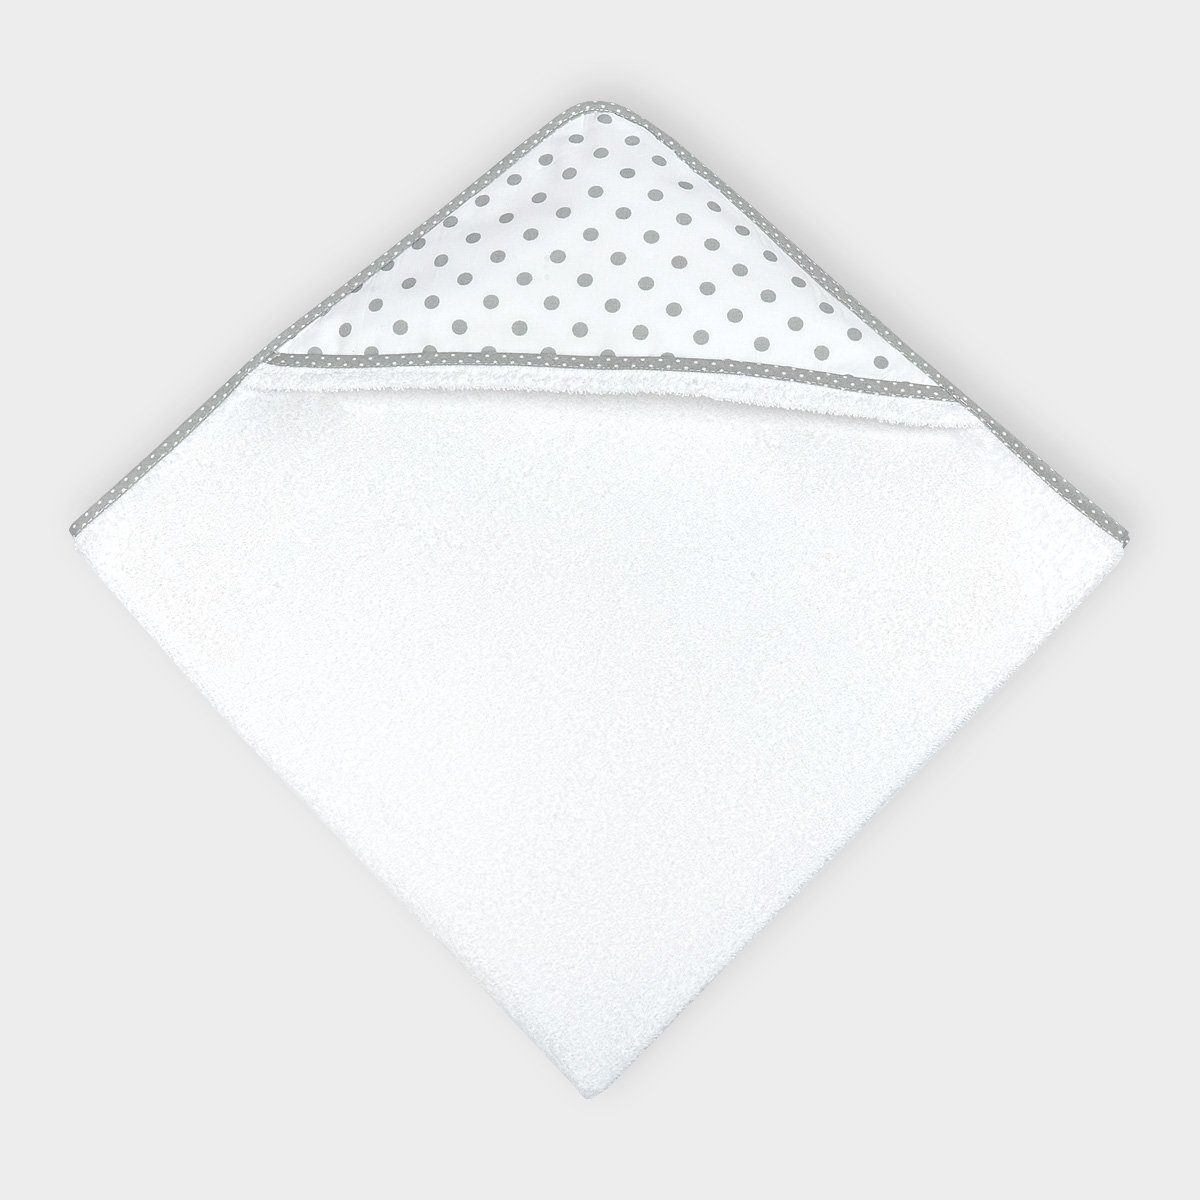 KraftKids Kapuzenhandtuch graue Punkte auf Weiss, 100% Baumwolle, extra dickes und weiches Frottee, eingefasst mit Schrägband